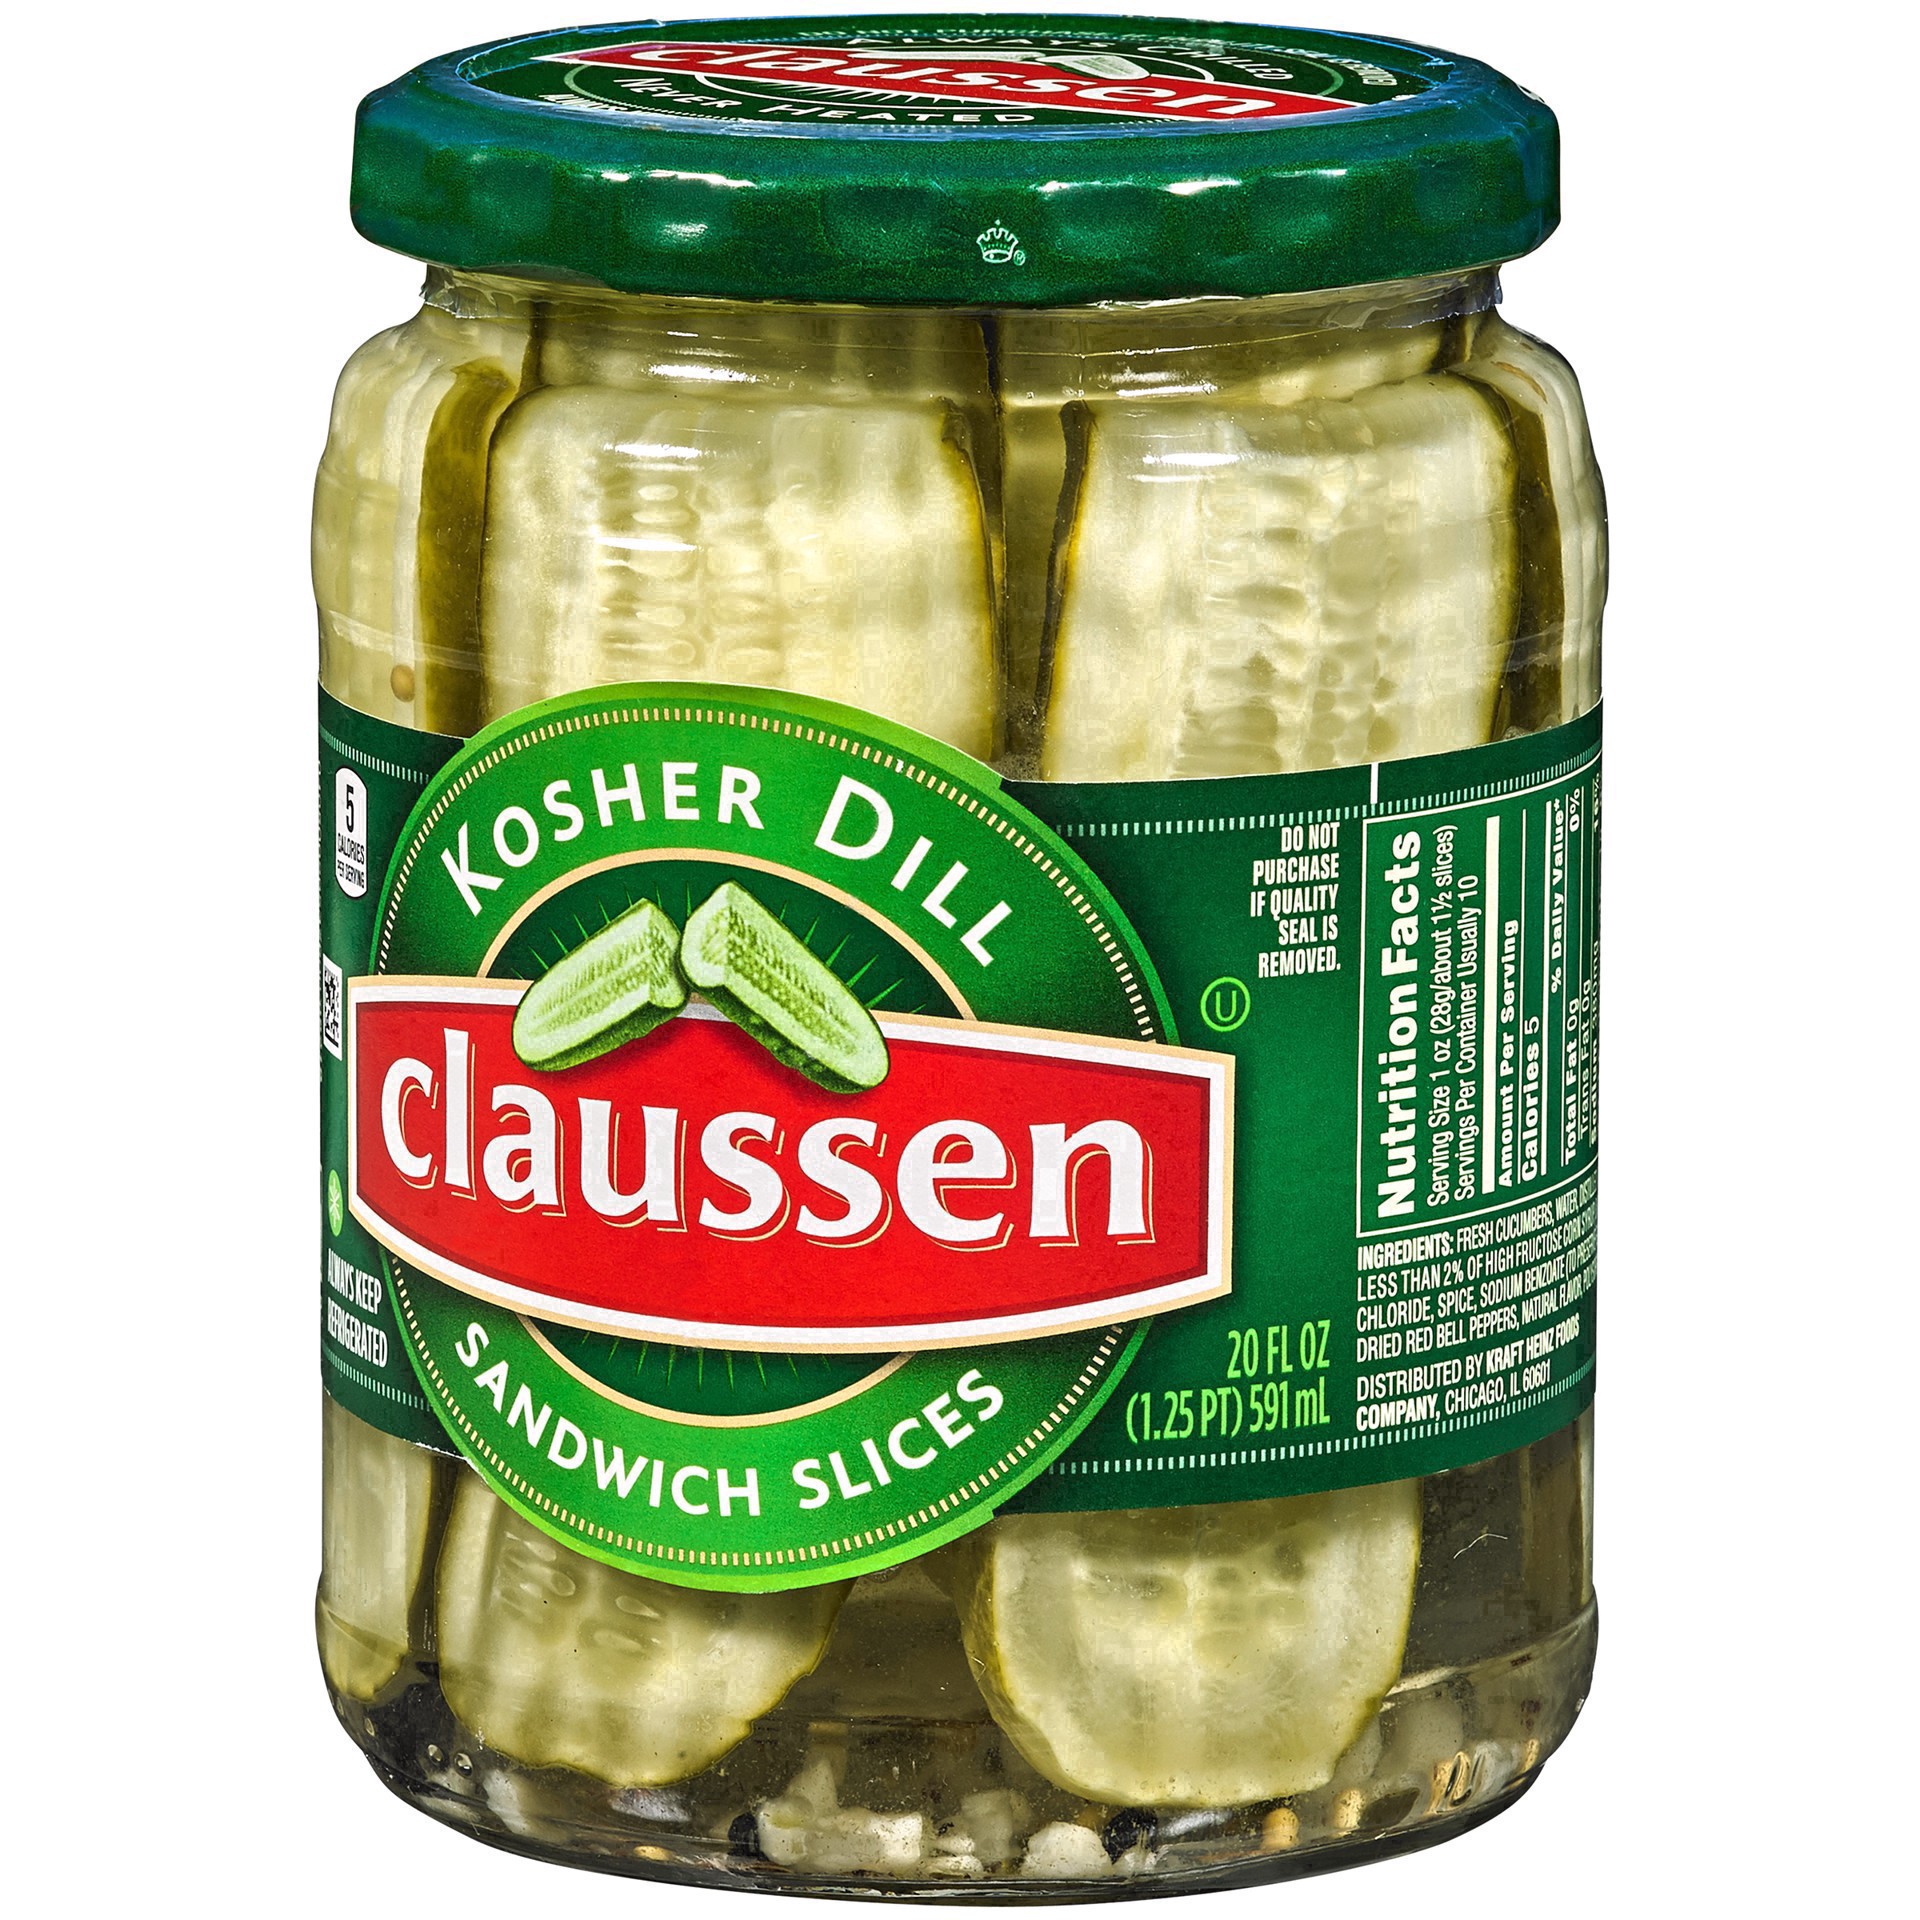 slide 69 of 144, Claussen Kosher Dill Pickle Sandwich Slices, 20 fl. oz. Jar, 20 fl oz